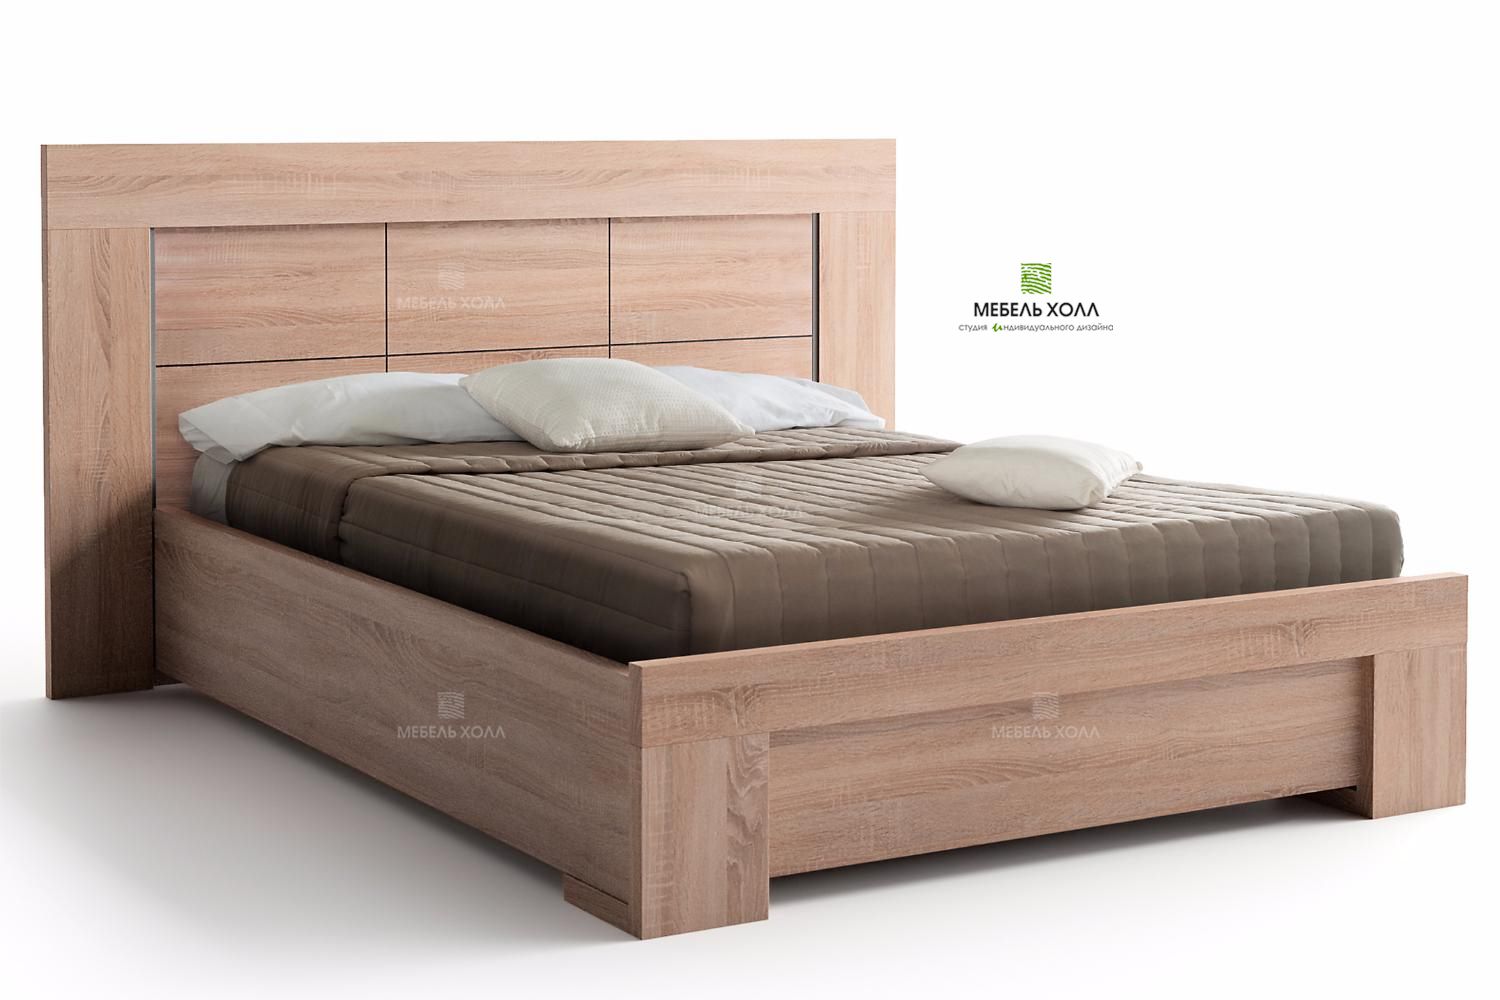 Современная и стильная кровать выполнена из массива с подсветкой у изголовья